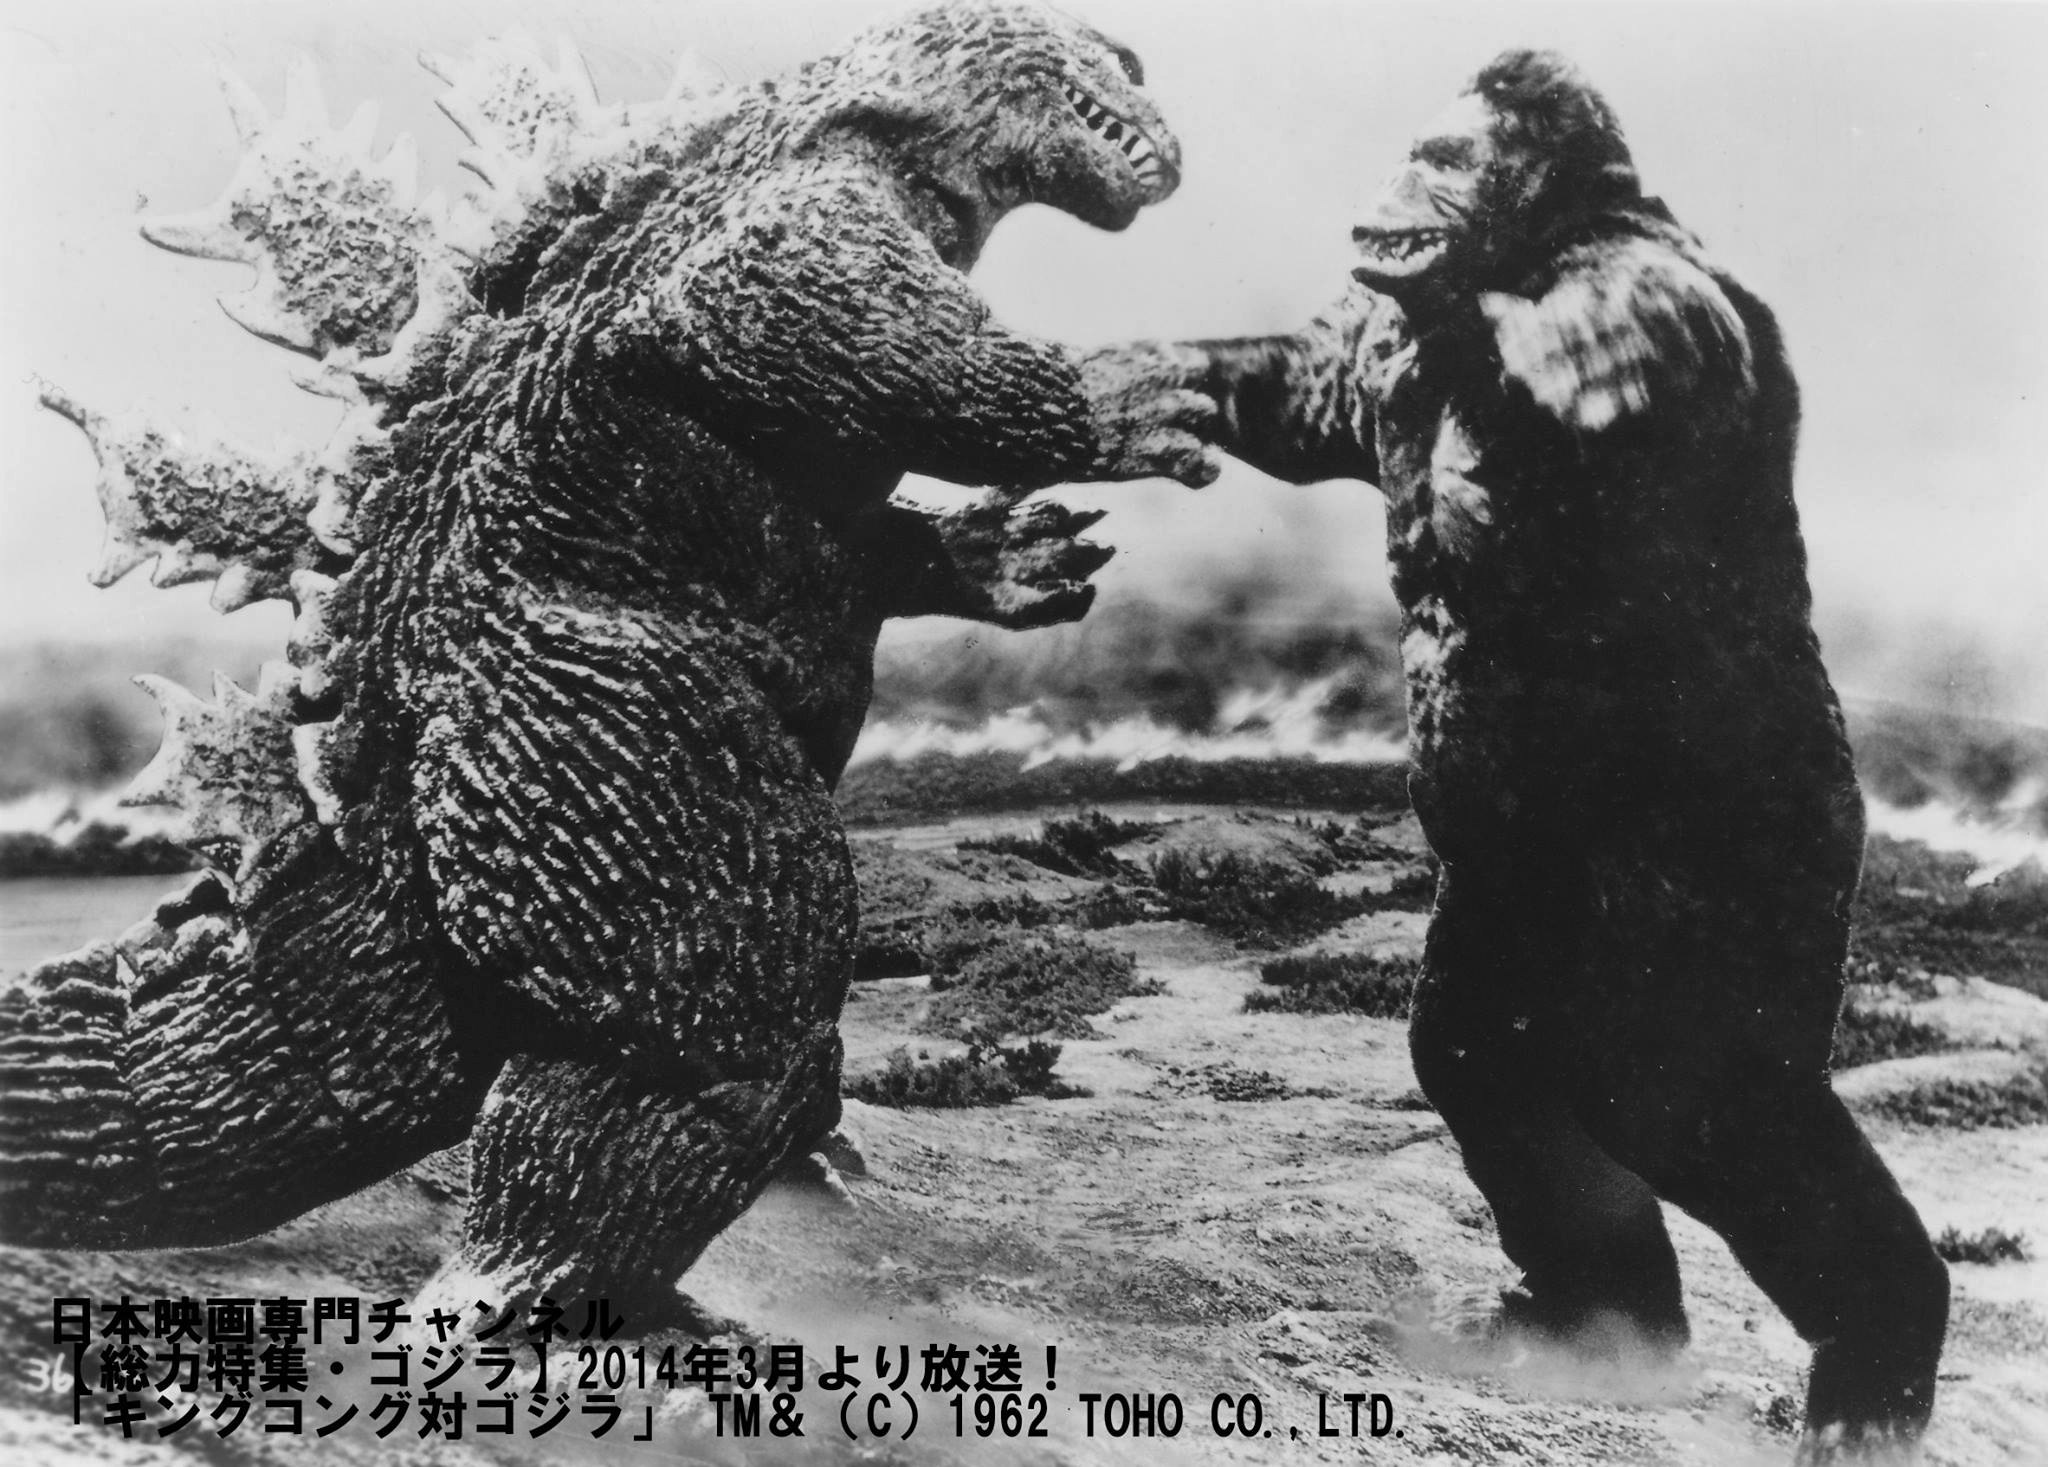 King Kong Vs. Godzilla HD Wallpaper | Background Image ...